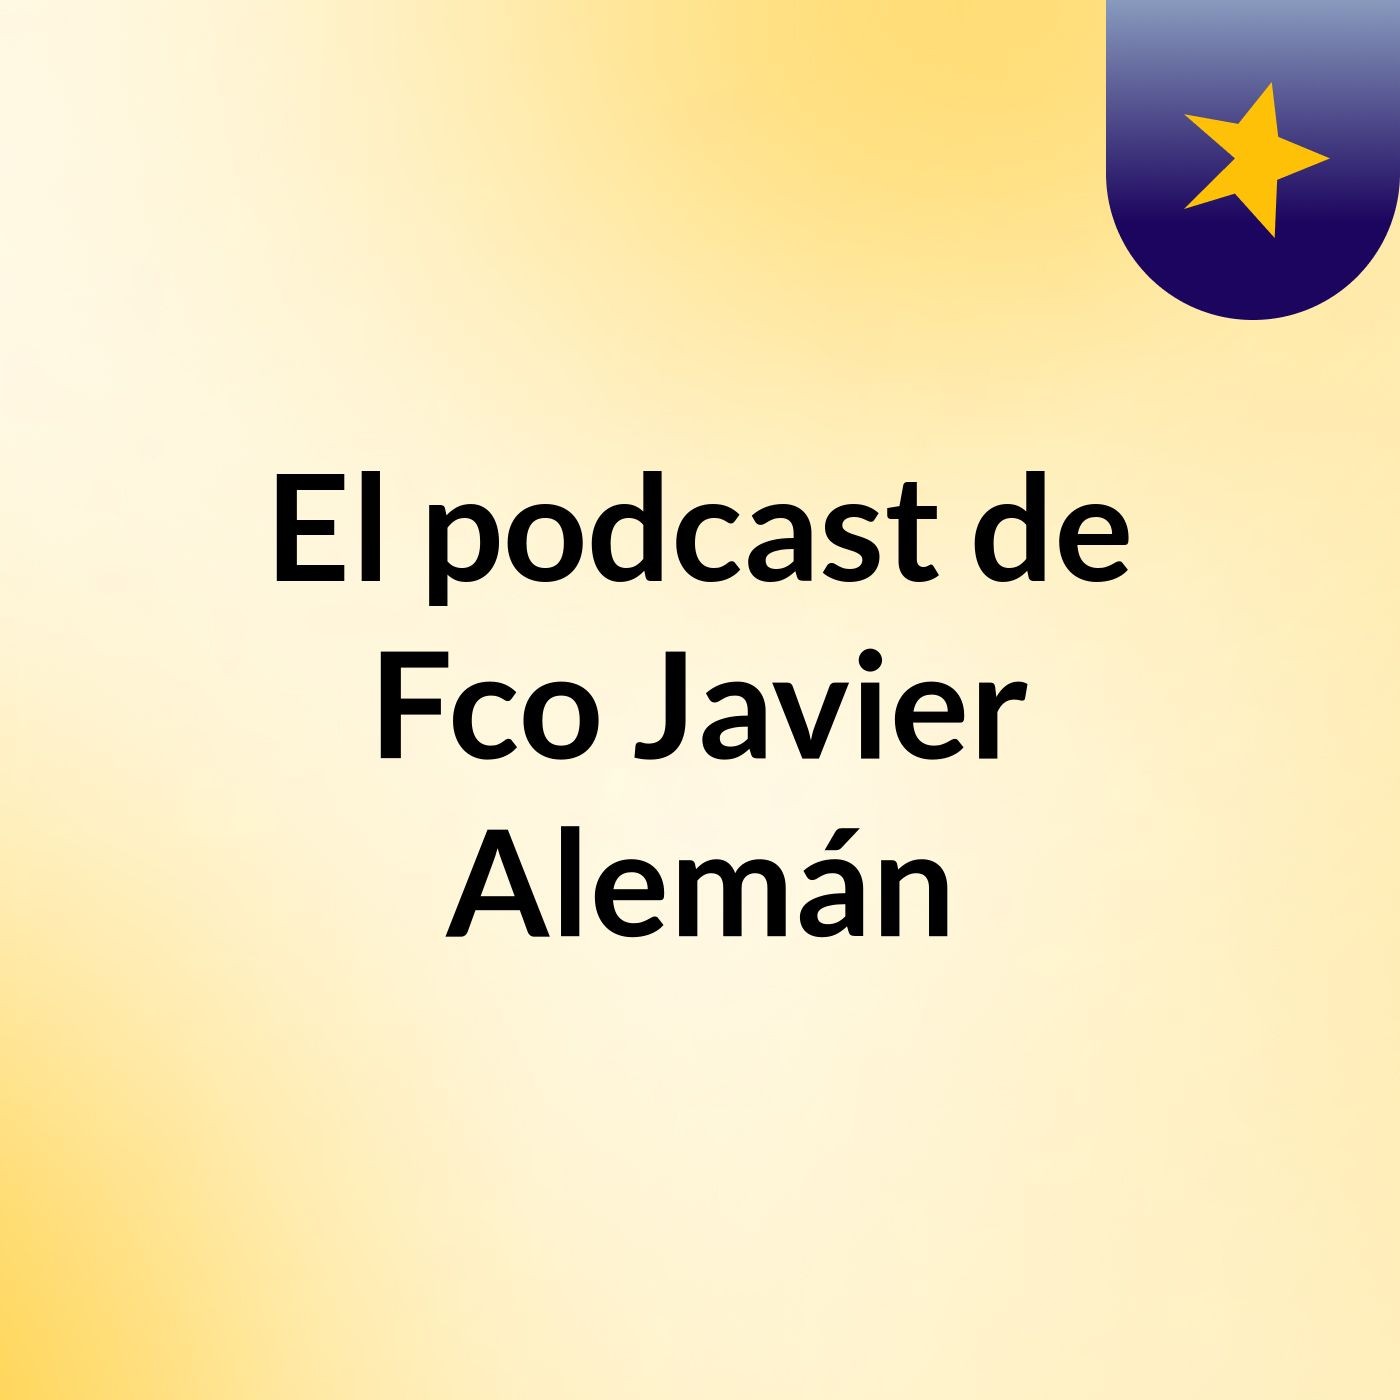 El podcast de Fco Javier Alemán